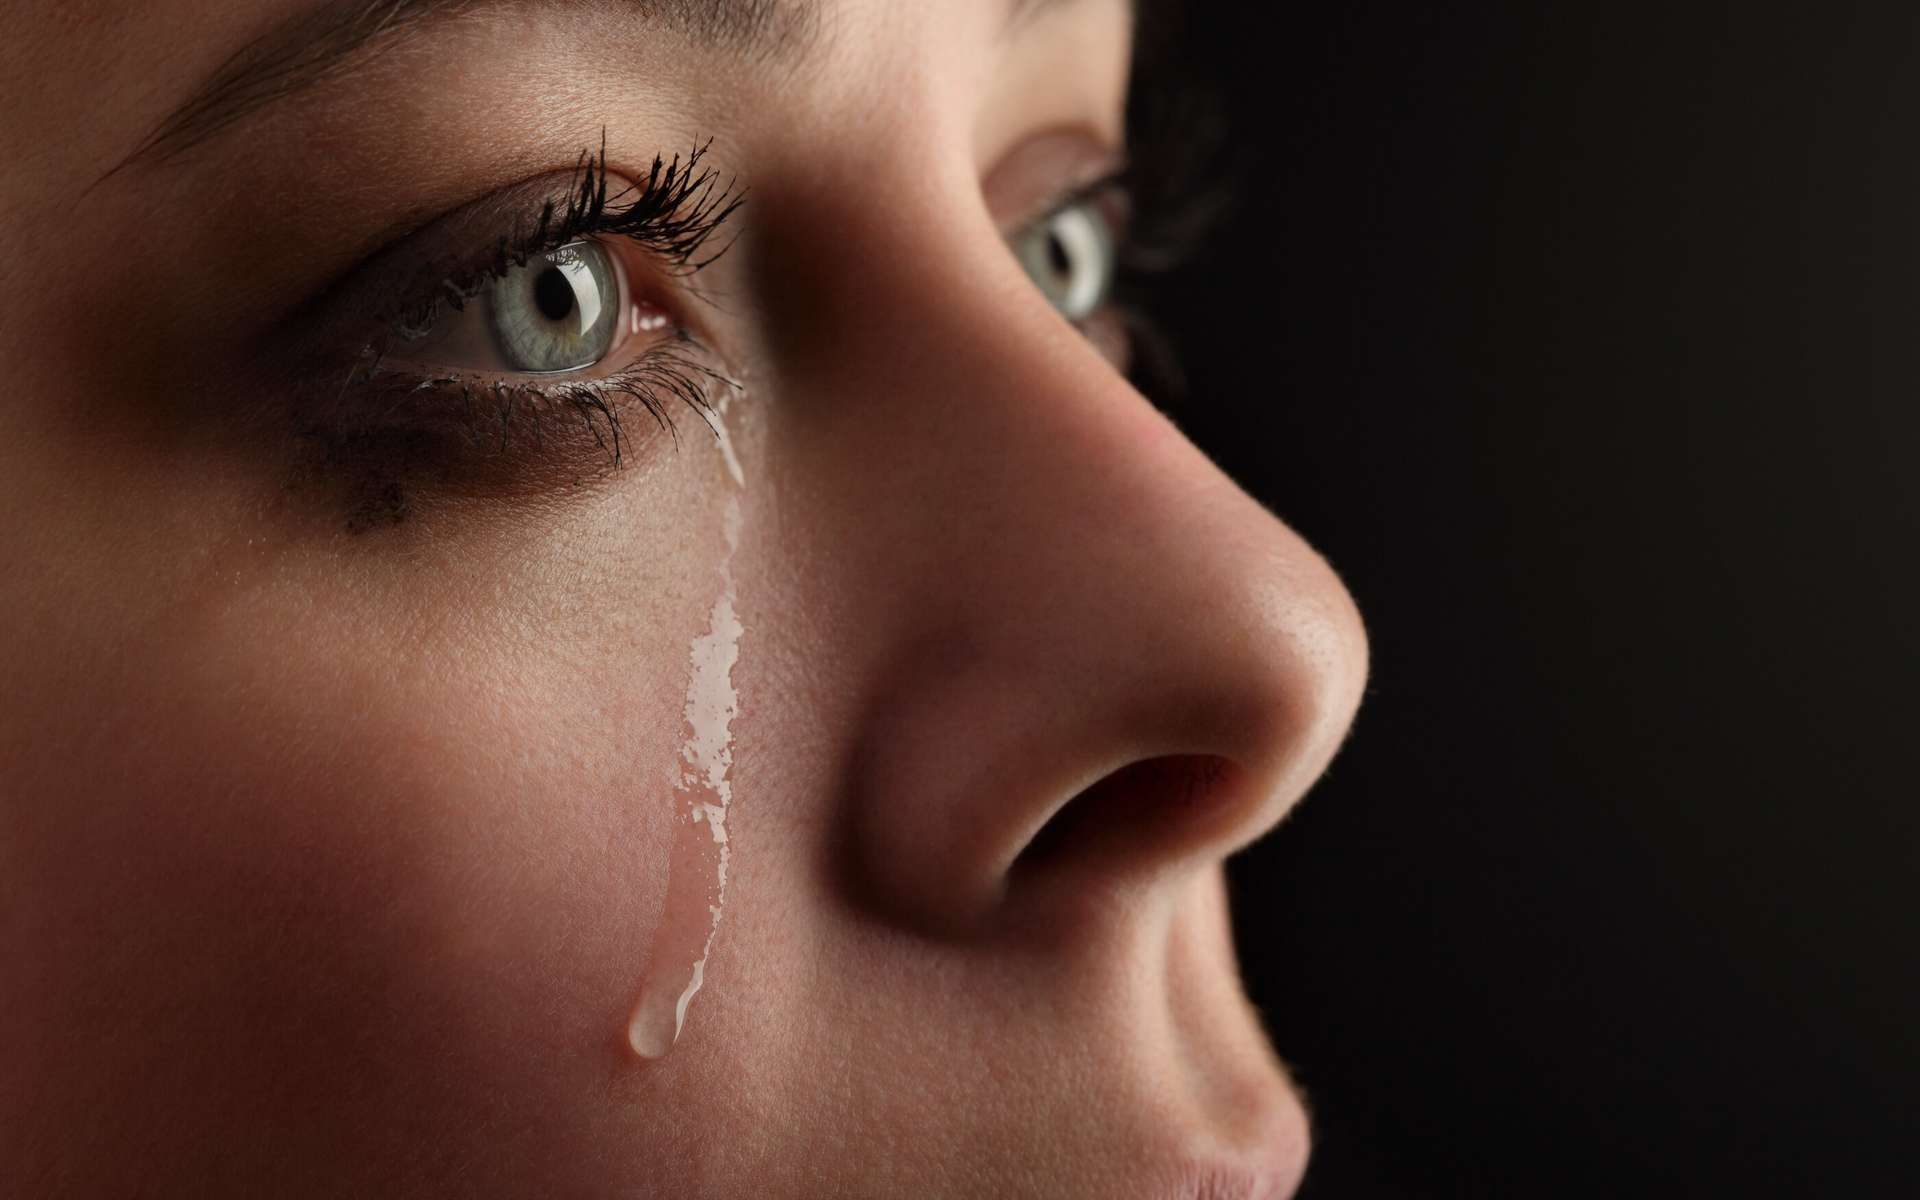 Les larmes de femme pourraient envoyer des signaux chimiques qui diminuent l'agressivité masculine